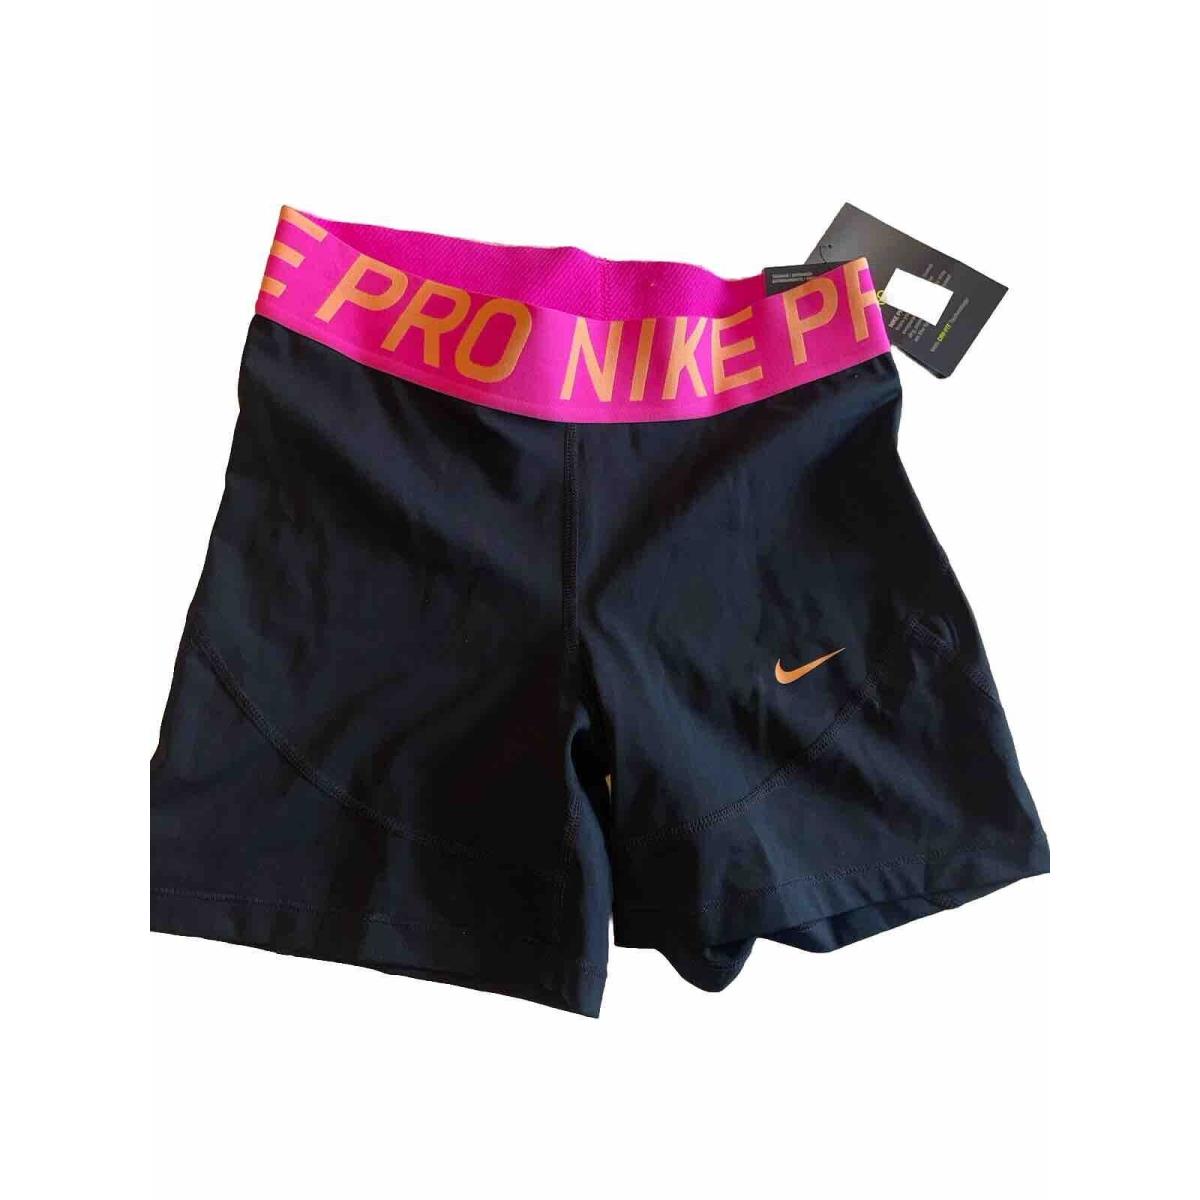 Nike Pro Tight Fit Shorts Swoosh Bra Gray/black/print sz L Med Support